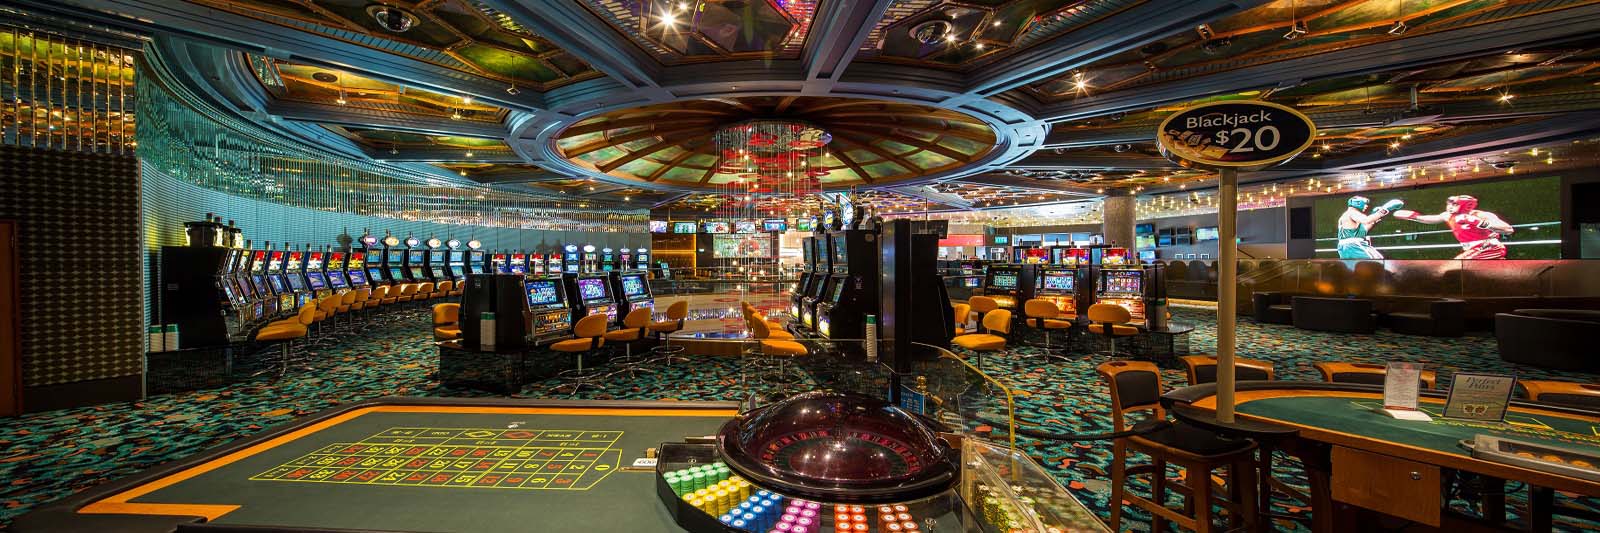 casino online merkur